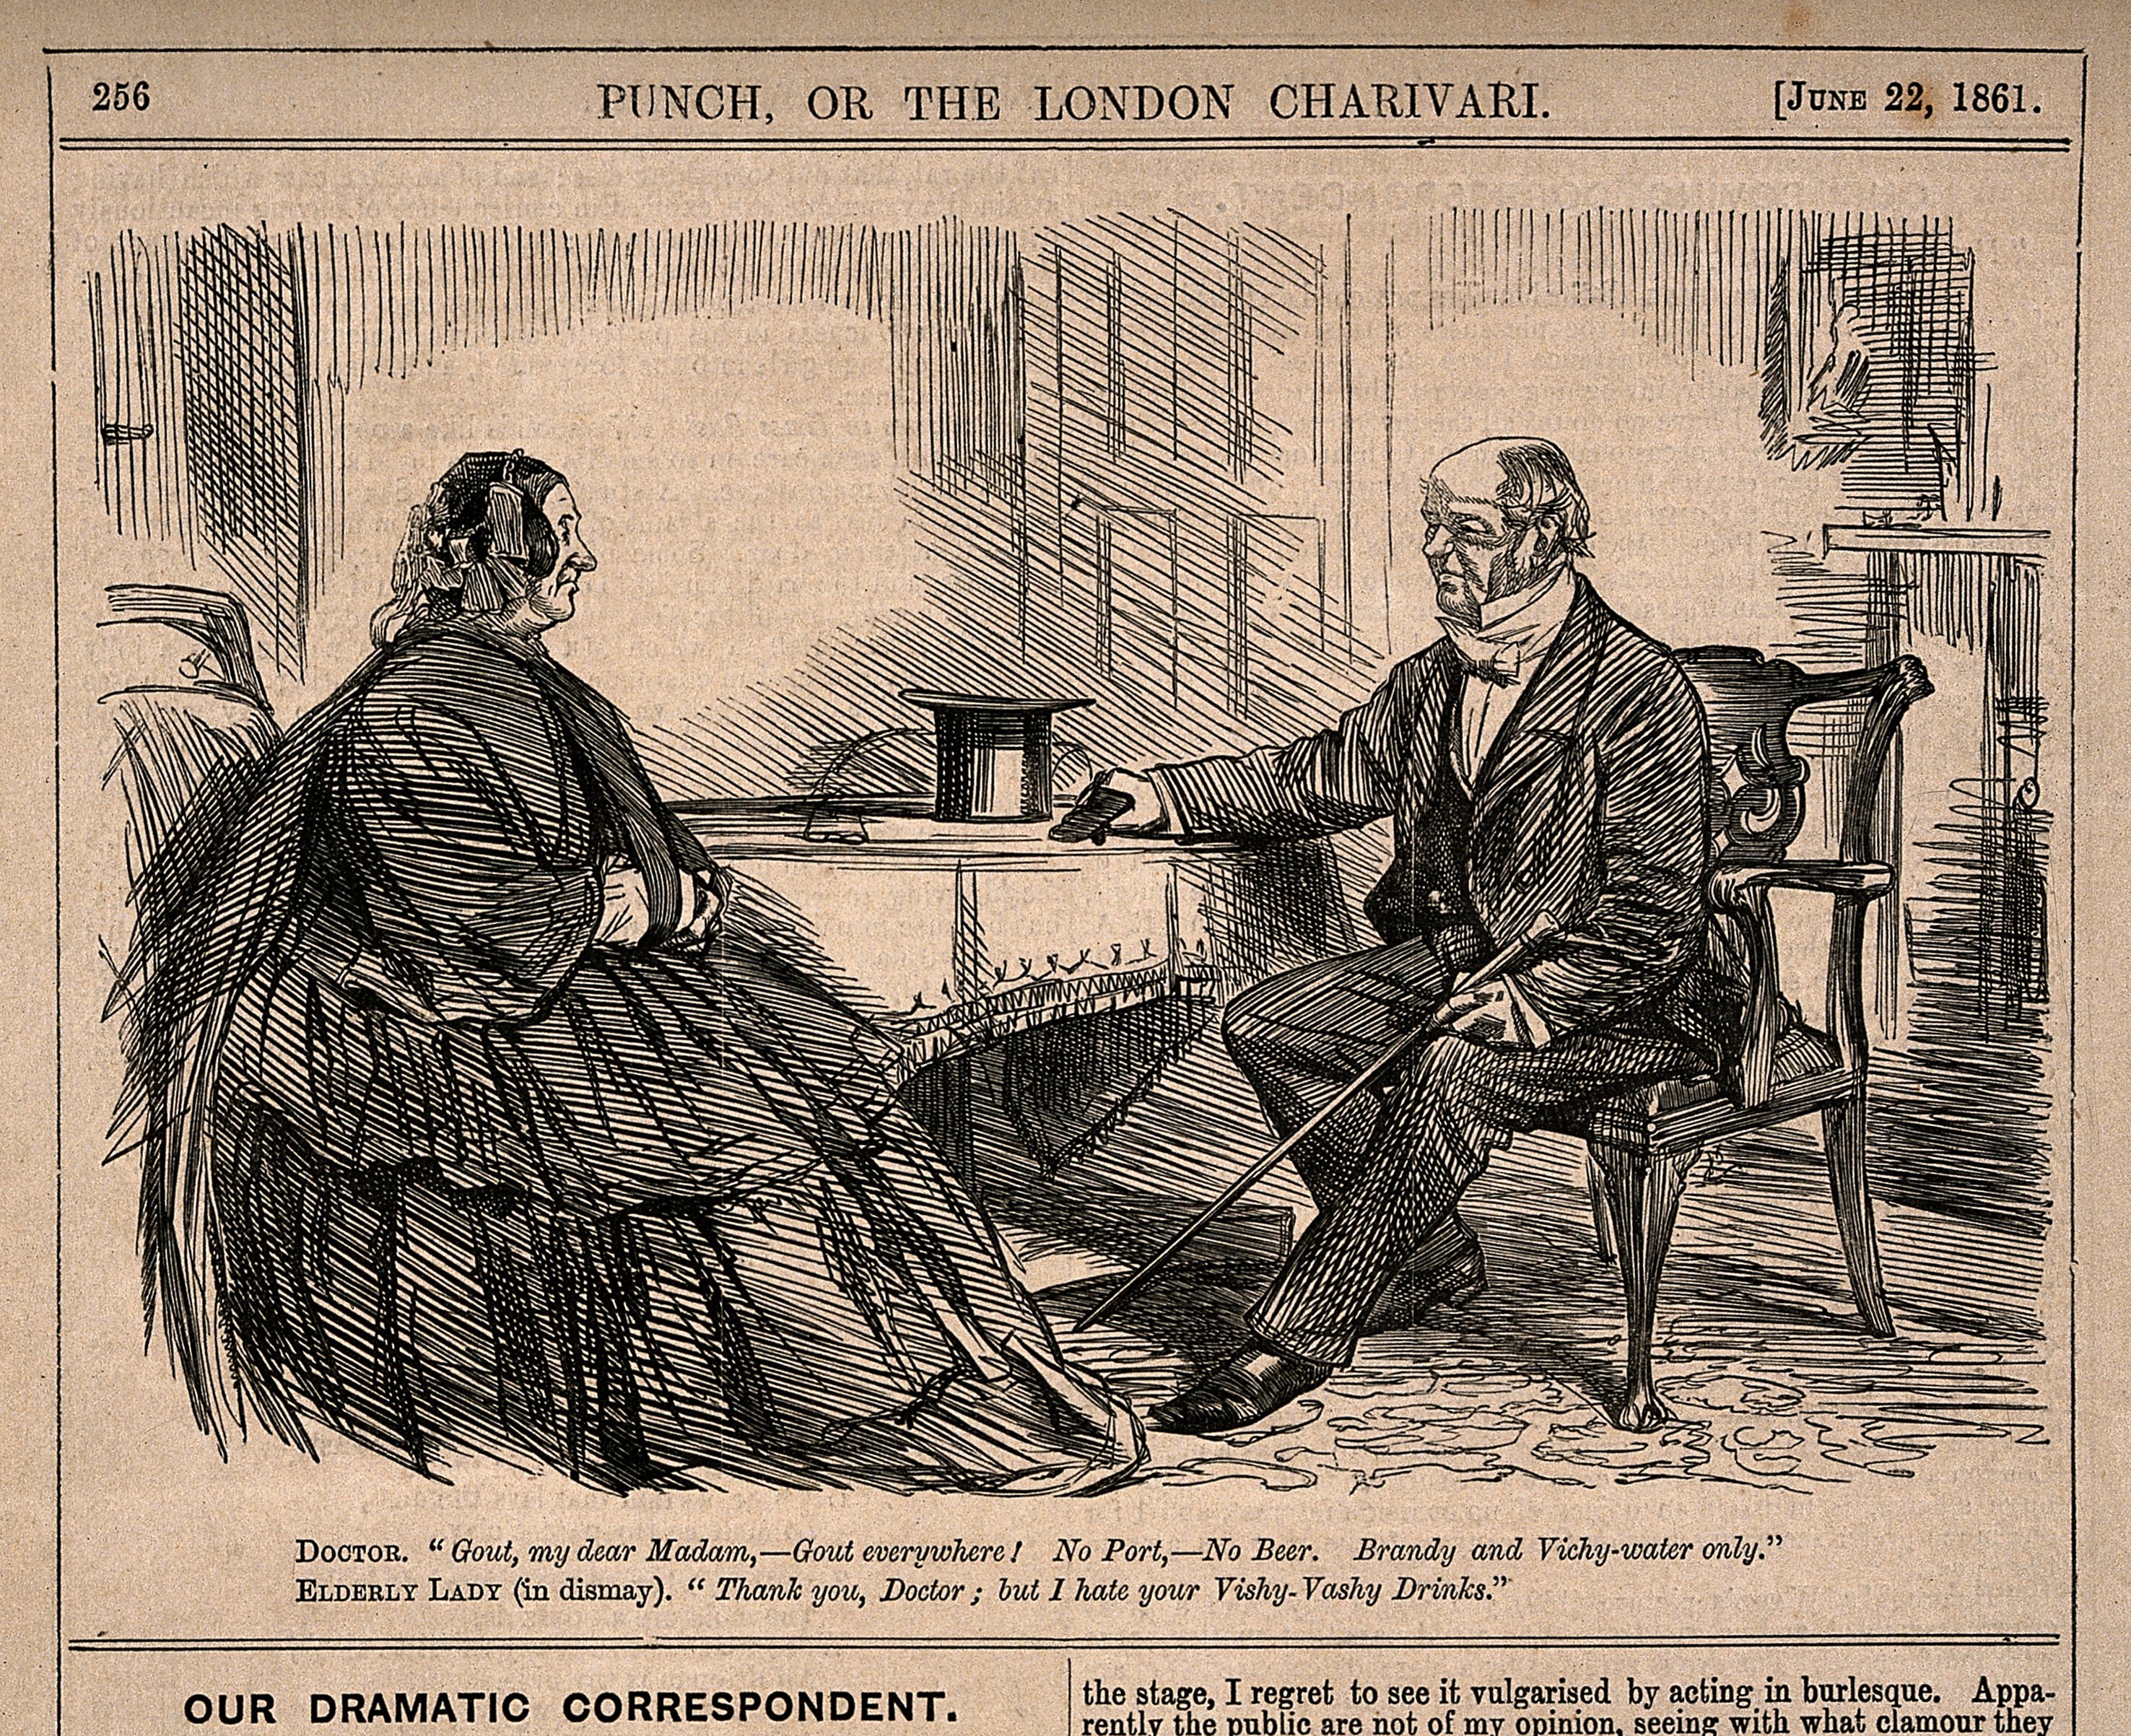 Abbild von einem alten Zeitungsbeitrag aus 1861, in dem ein Arzt seiner widerstrebenden Patientin rät, Alkohol zu vermeiden